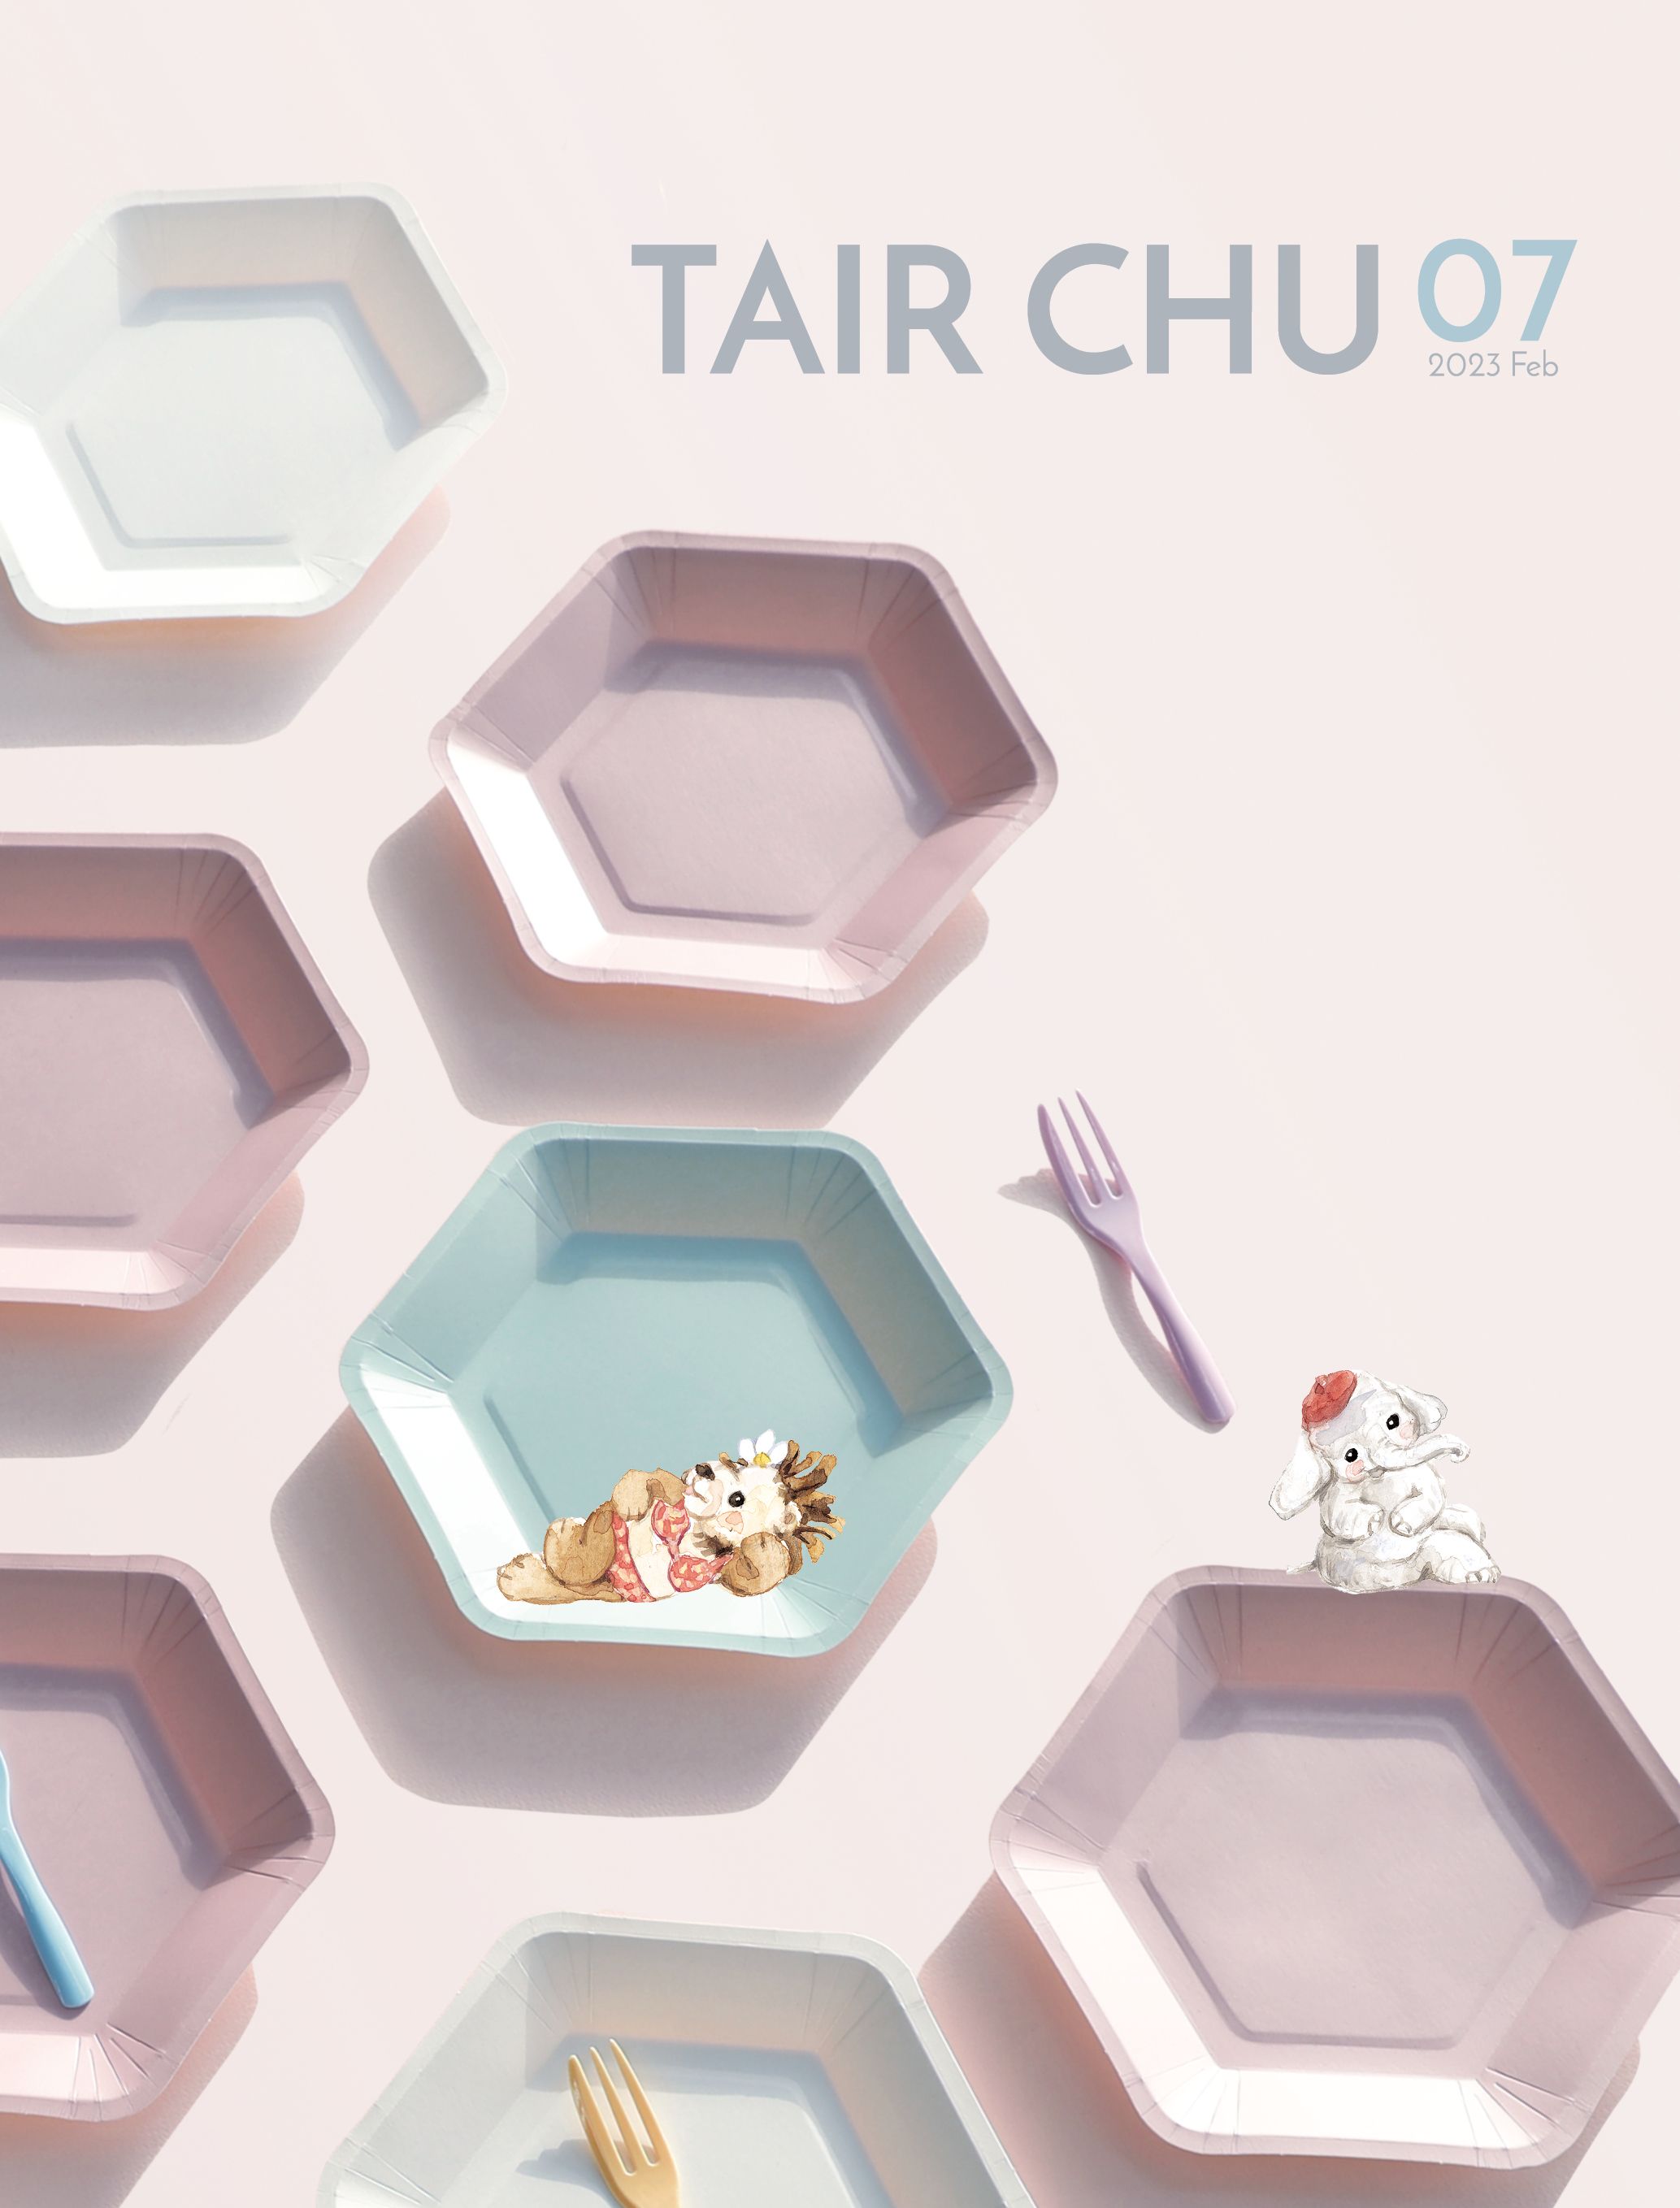 Katalog łyżek i naczyń jednorazowych Tair Chu na przyjęcia z 2023 roku